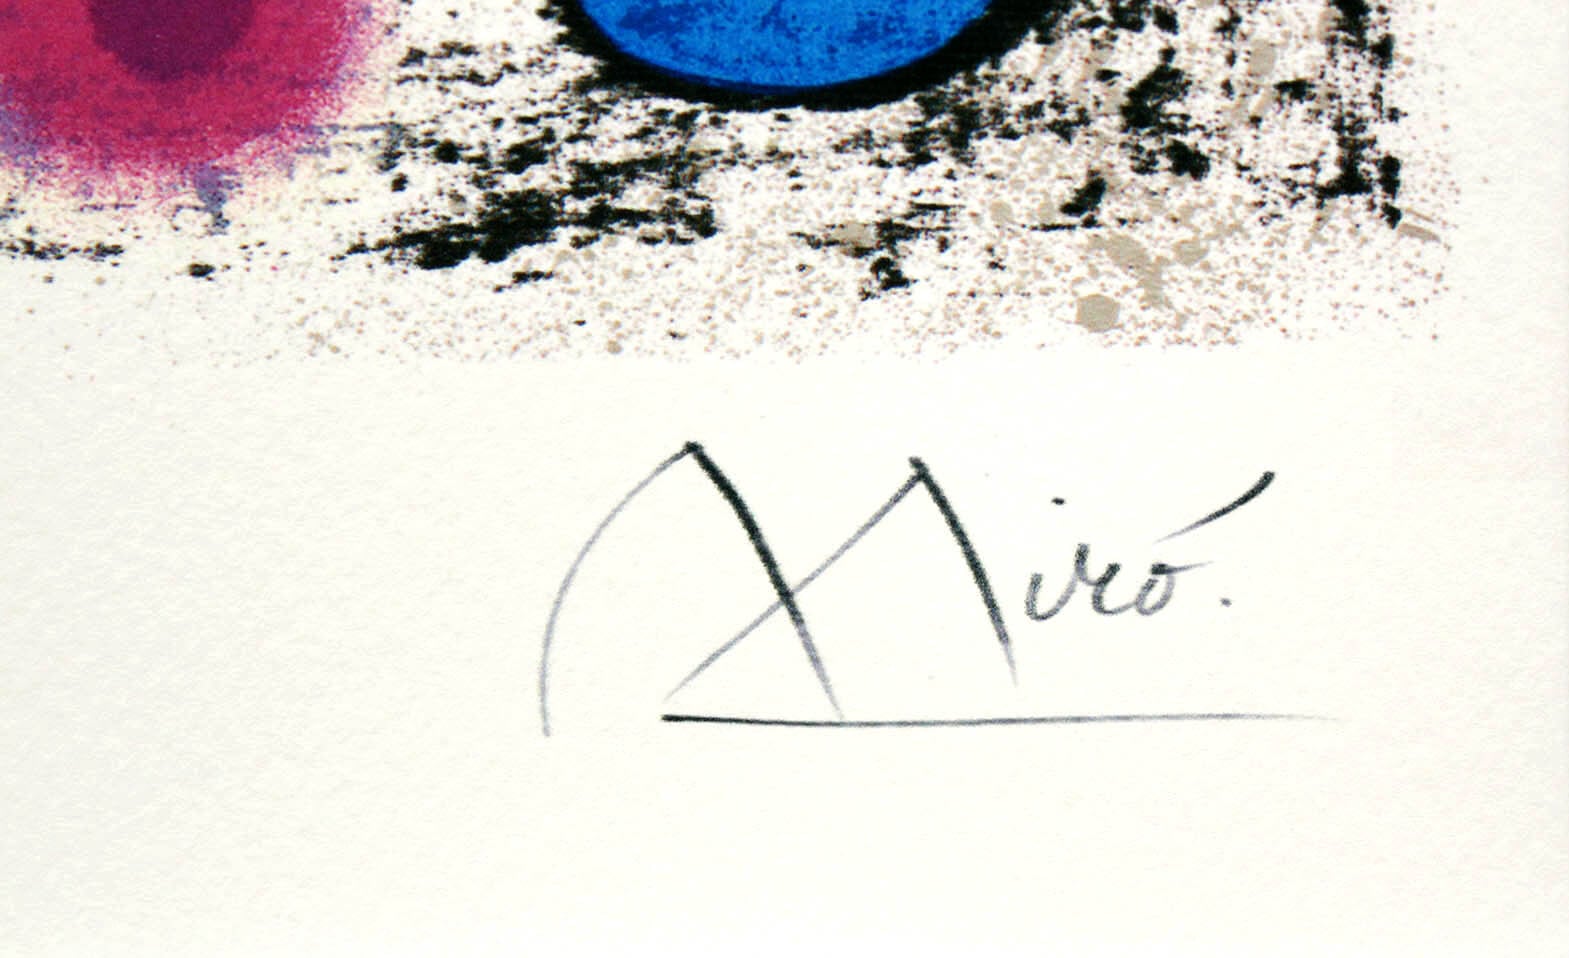 ジョアン・ミロ「ジョアン・ミロへのオマージュ」作品証明書・展示用フック・限定500部エディション付複製画リトグラフ